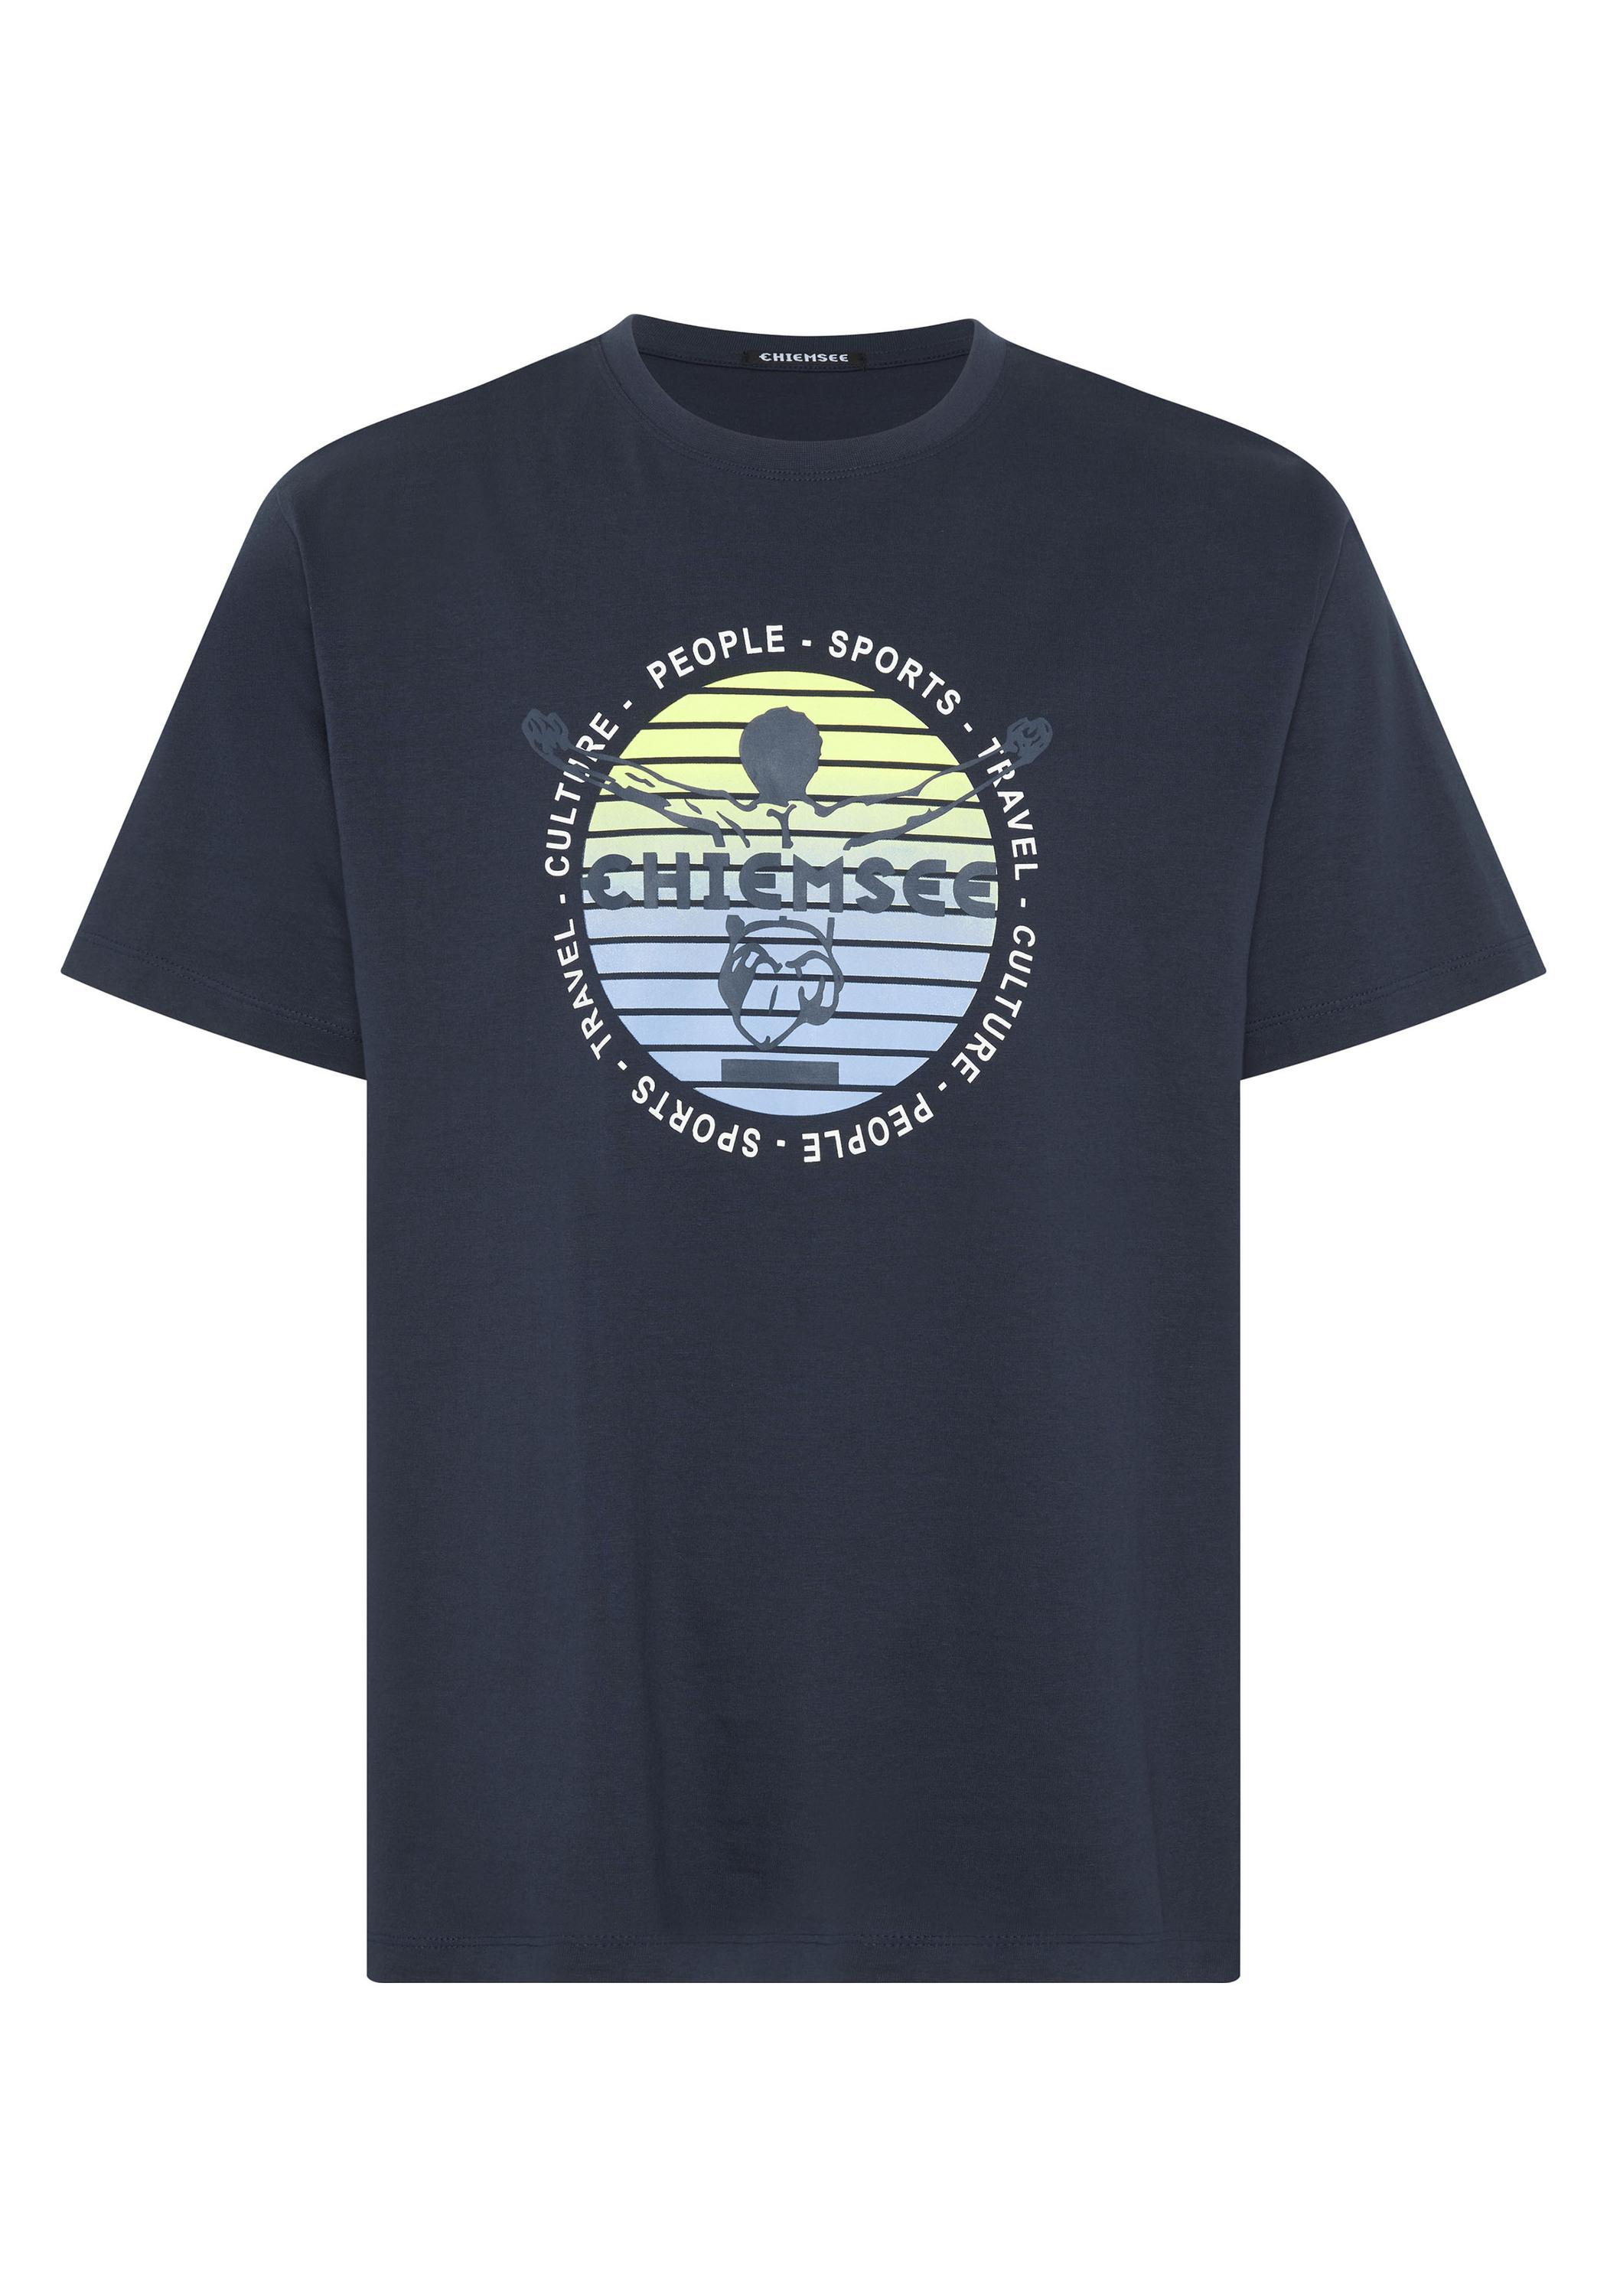 T-Shirt Herren Sky Online Shop kaufen Chiemsee SportScheck im Night T-Shirt 19-3924 von